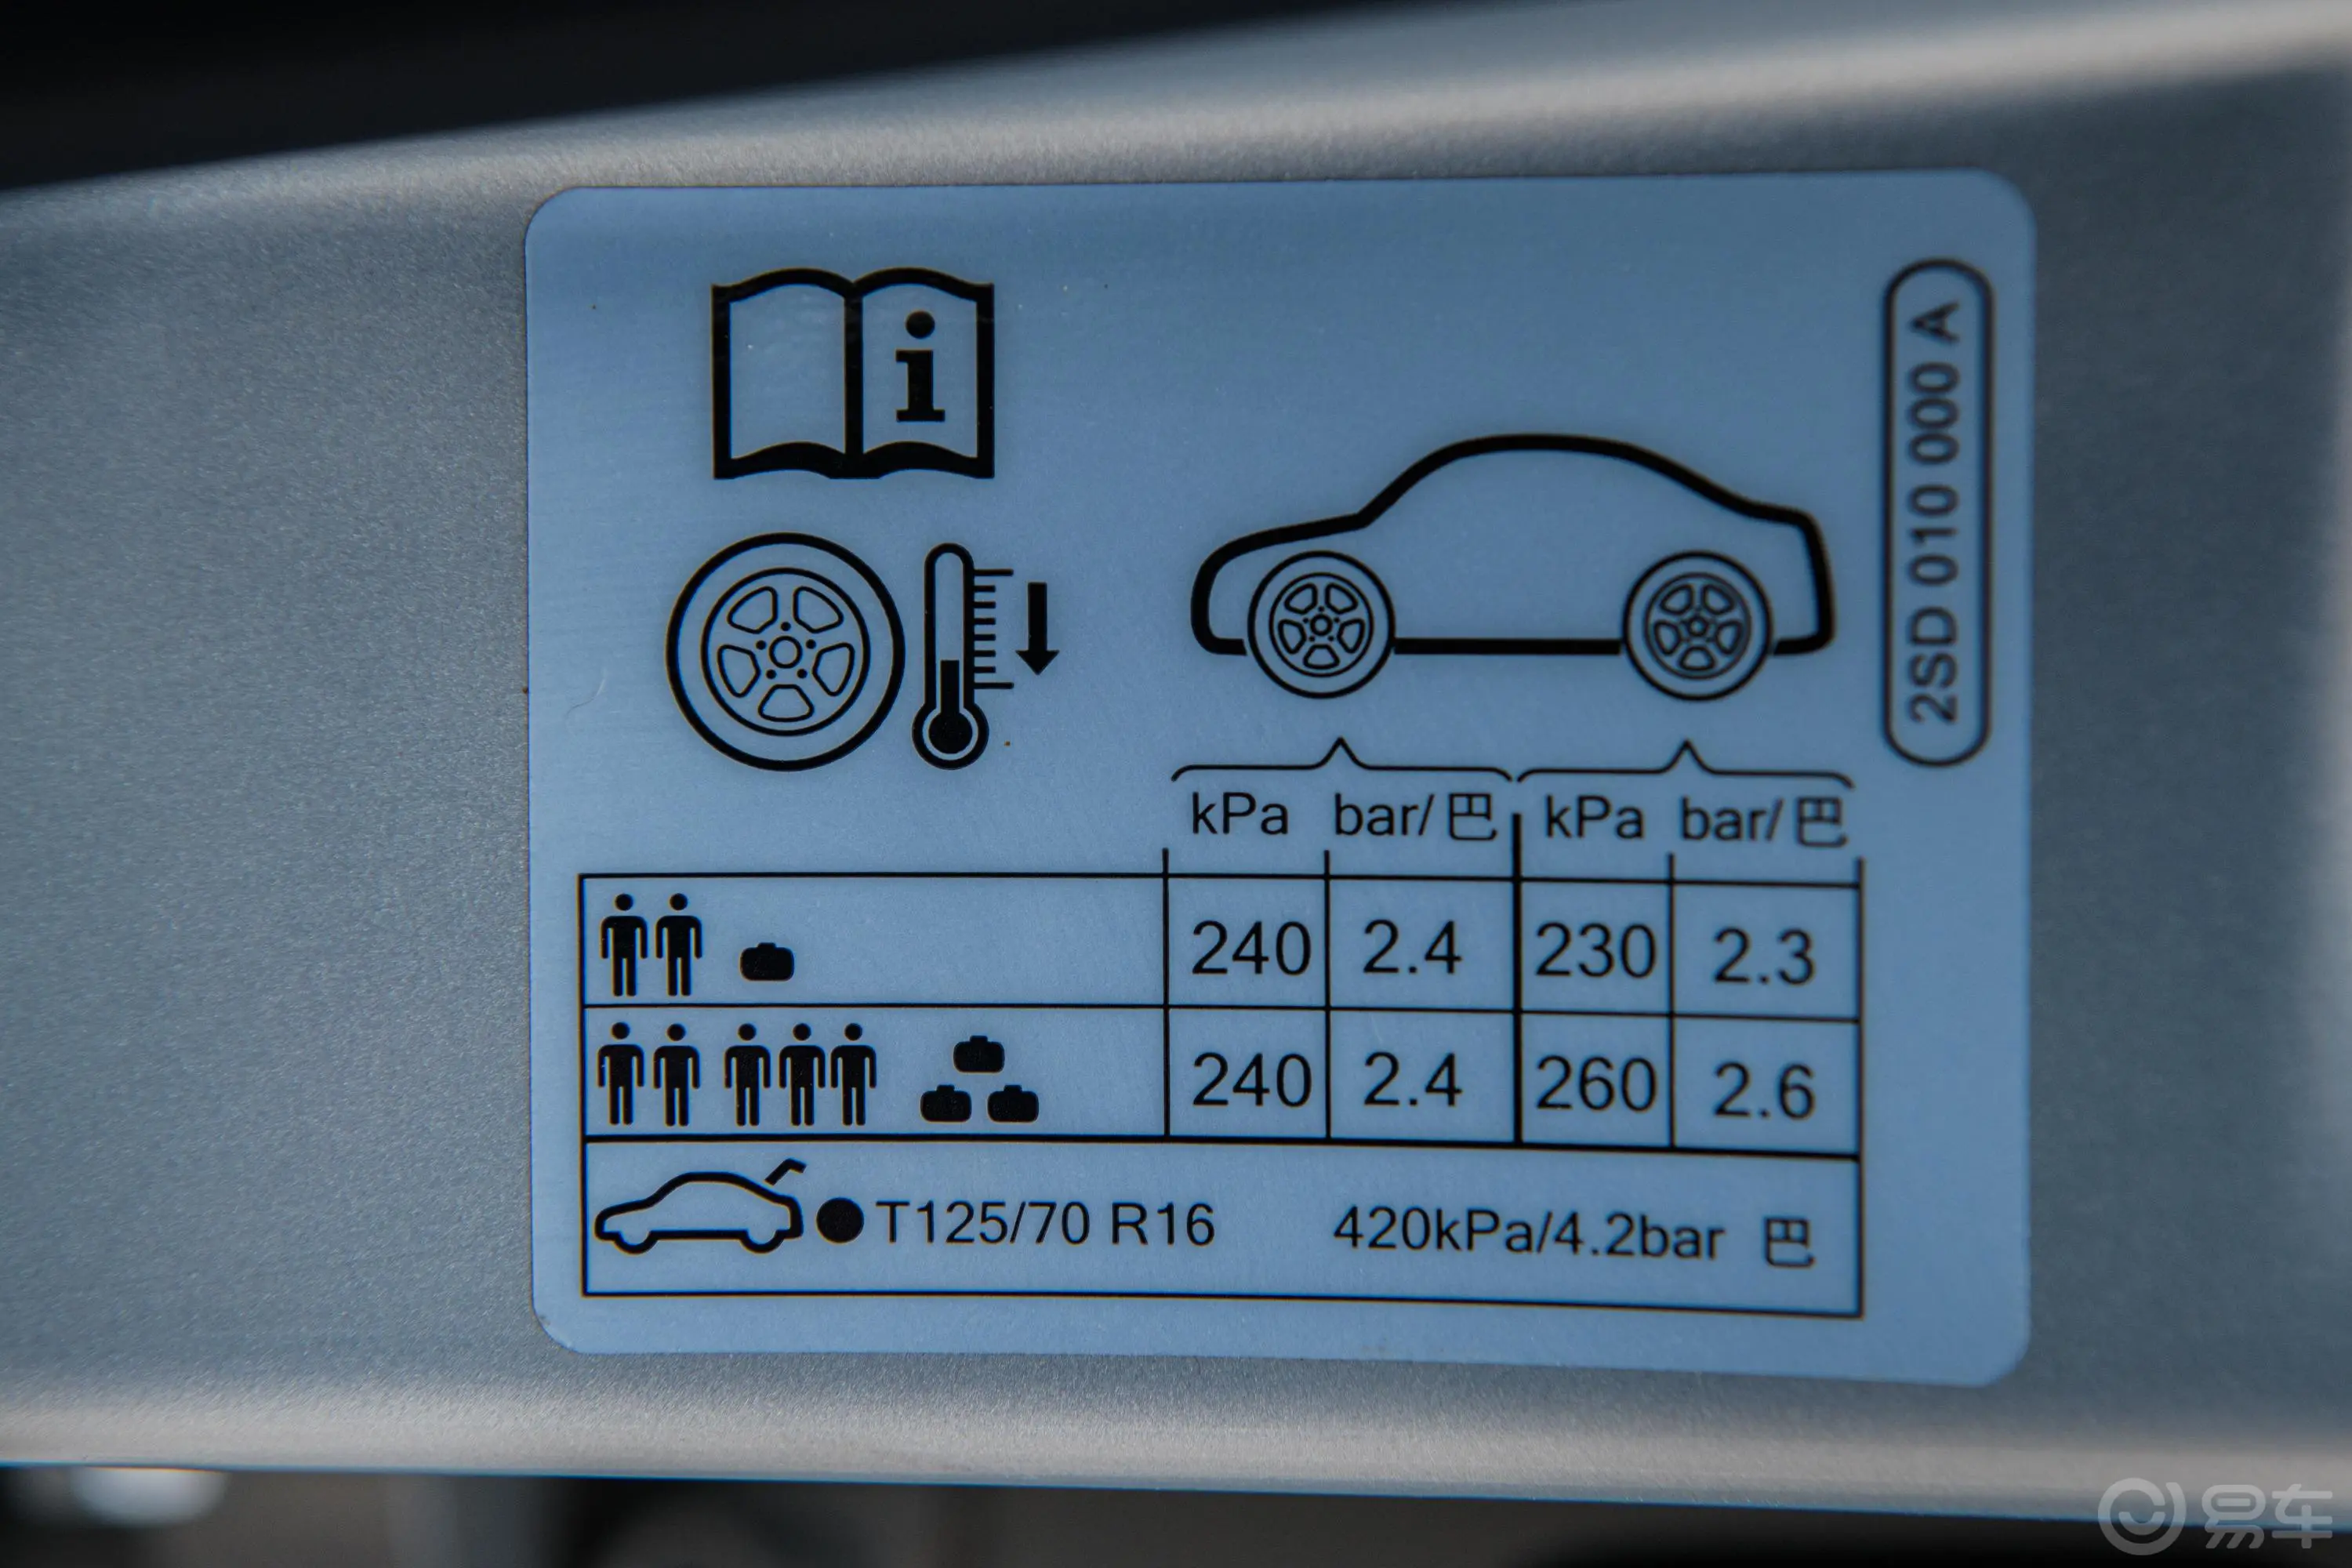 PoloPlus 1.5L 自动炫彩科技版胎压信息铭牌